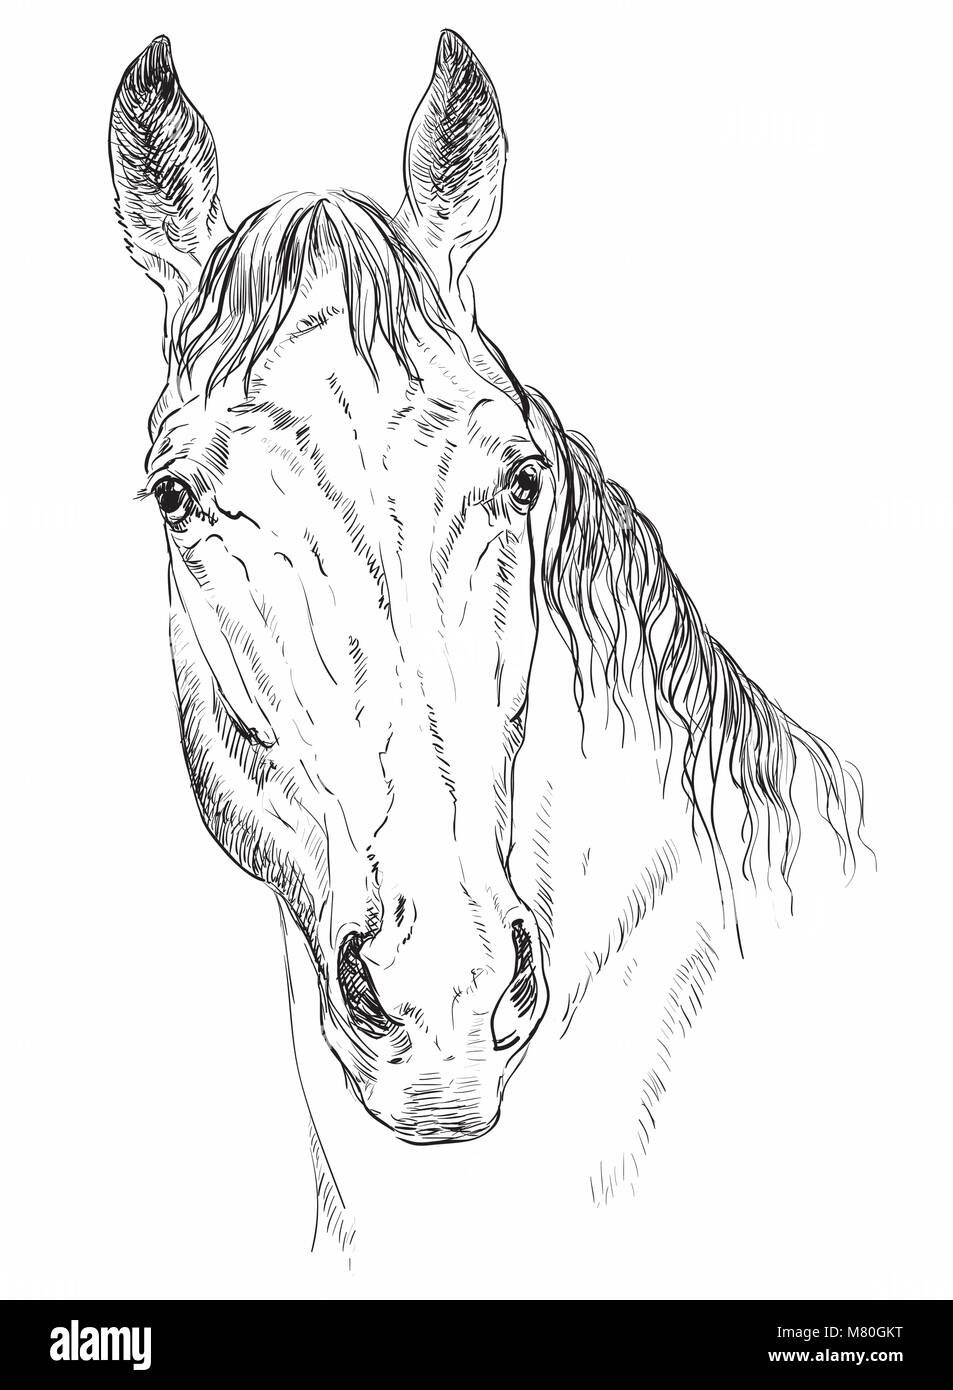 Trakehner Porträt. Pferd Kopf schauen in die Kamera in Schwarzweiß Farbe auf weißem Hintergrund. Vektor hand Zeichnung Abbildung Stock Vektor